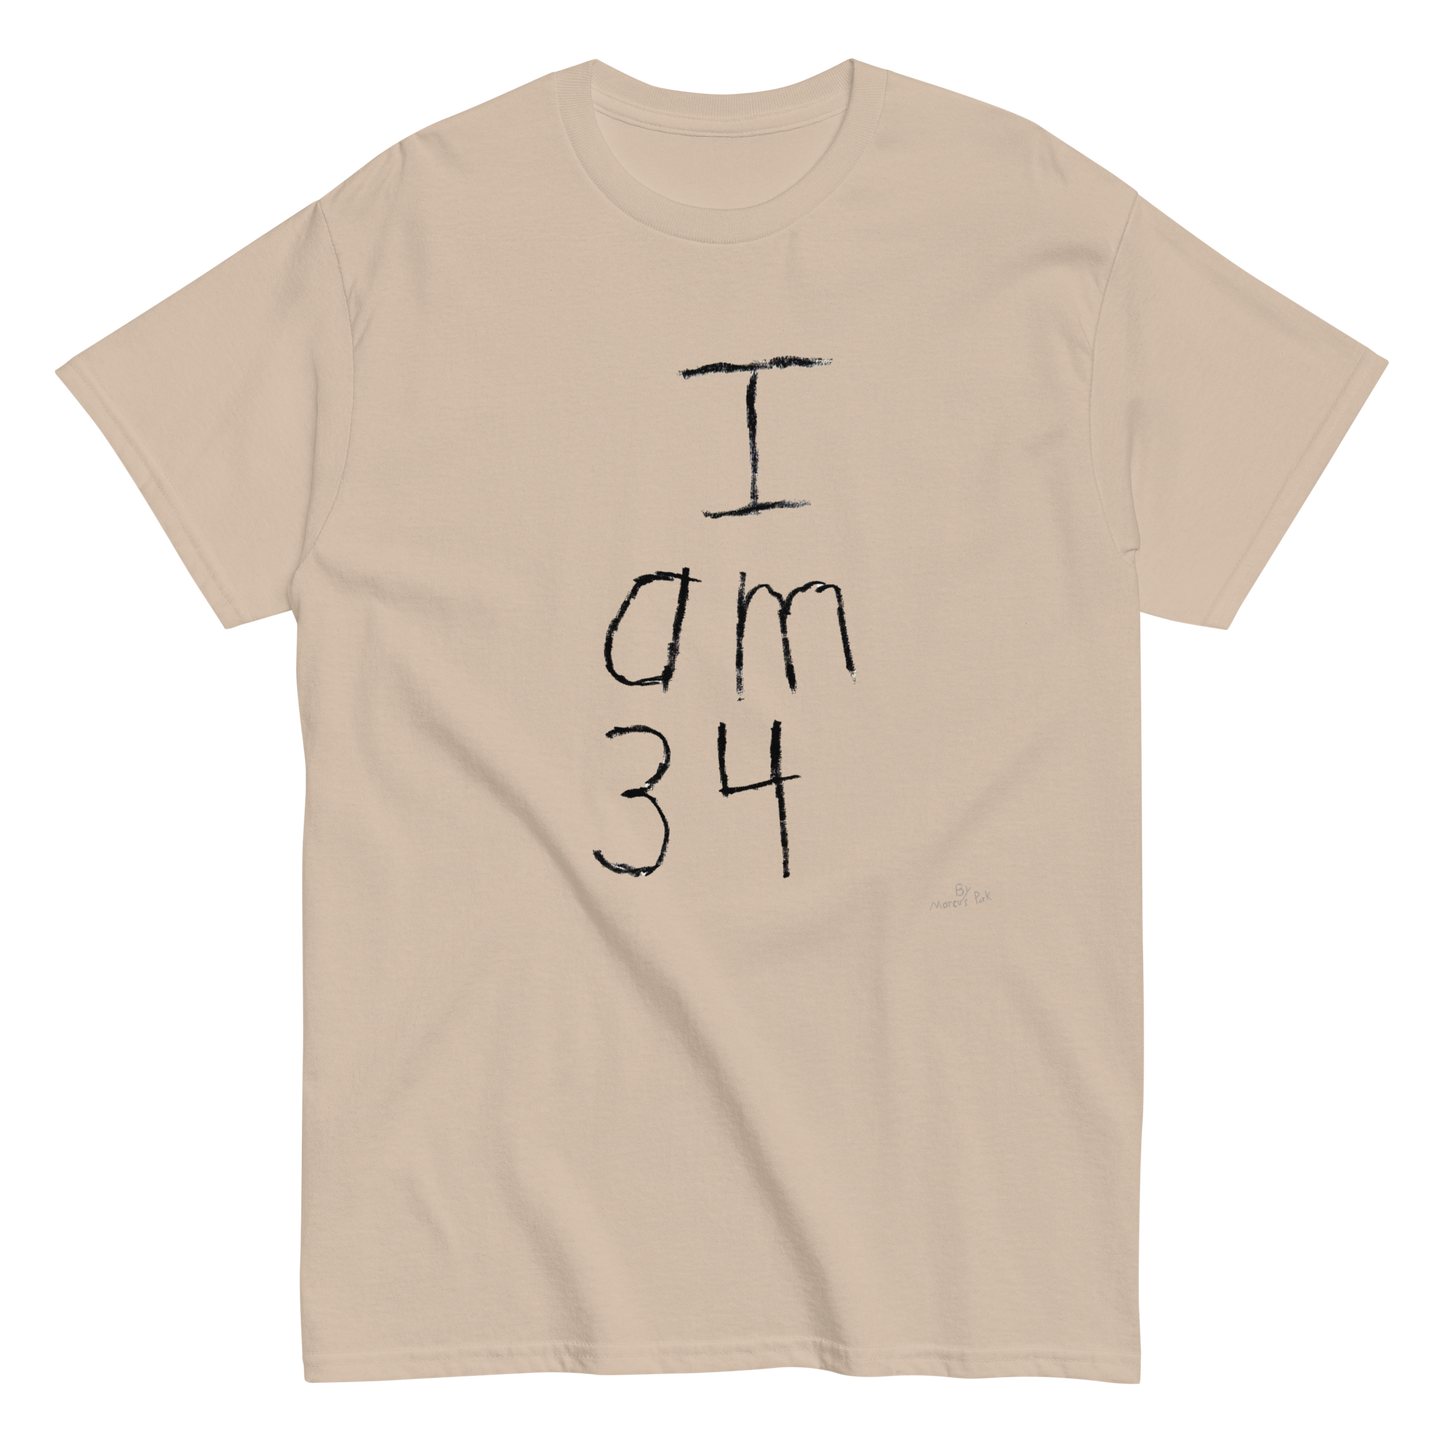 I am 34 T-Shirt